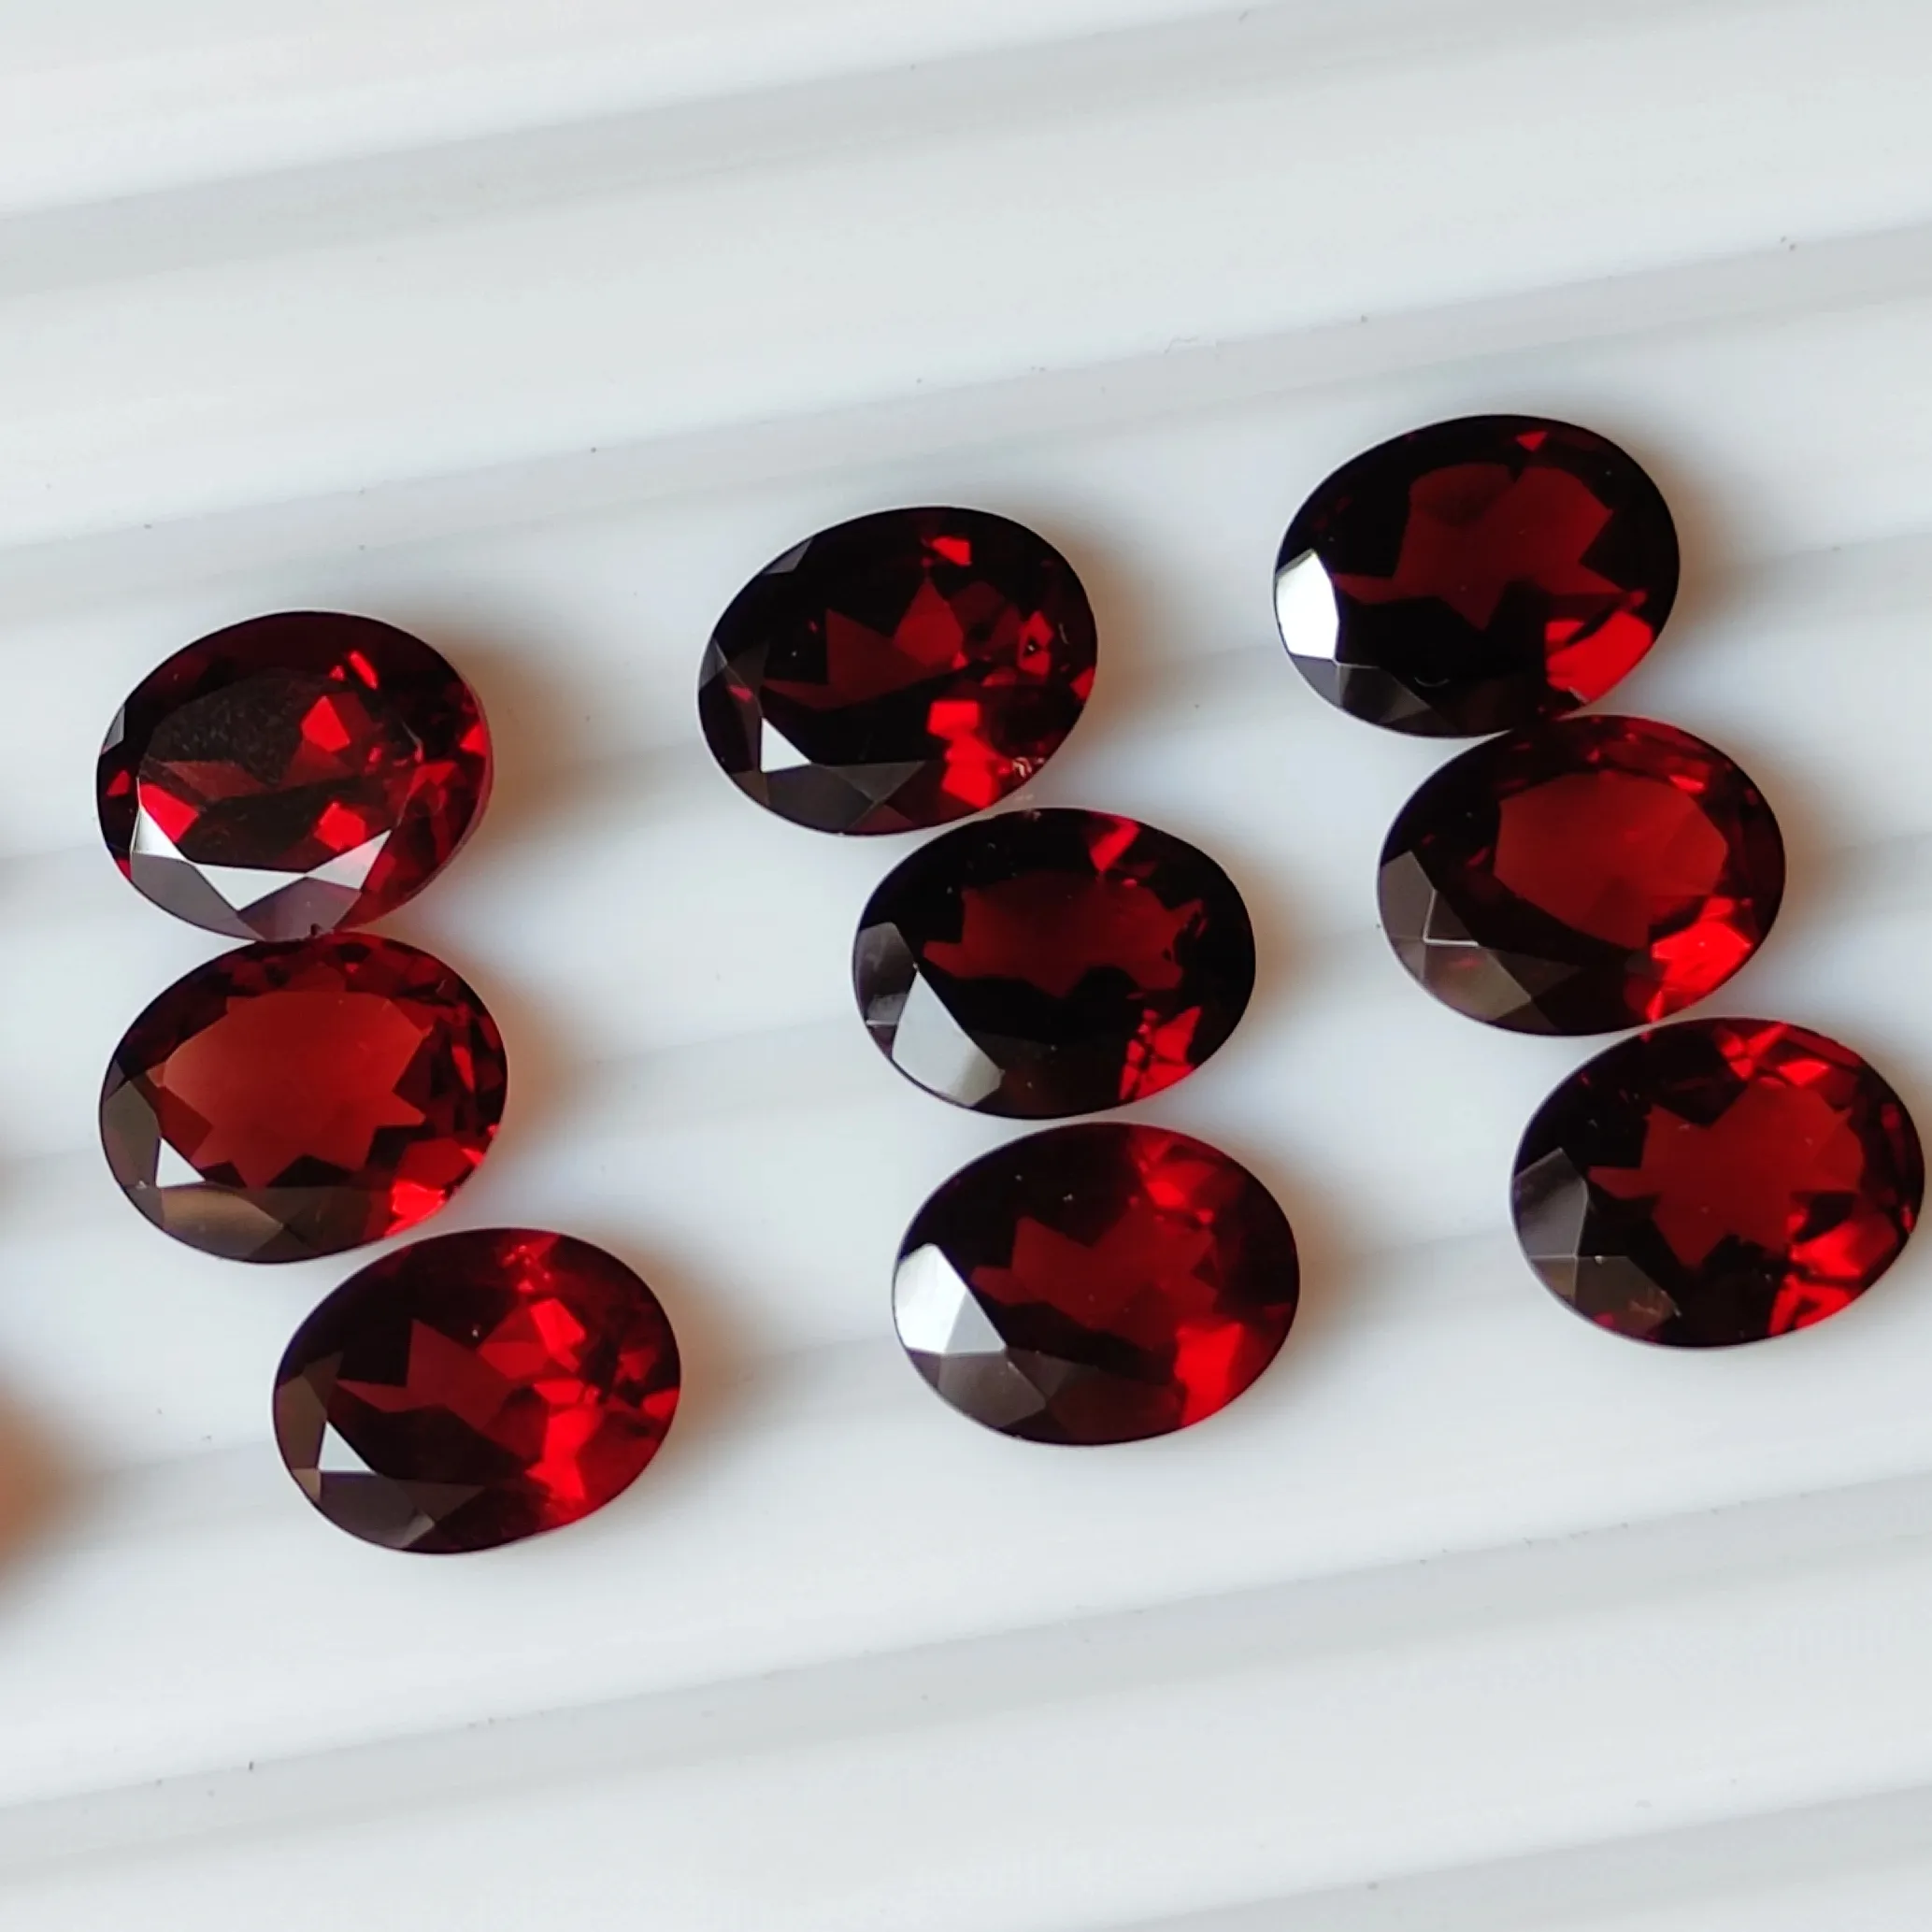 Yüksek kalite kırmızı mozambik Garrnet kesim taşlar 2mm 12mm her şekil ve boyut Oval yuvarlak armut Faceted Garnet taşlar